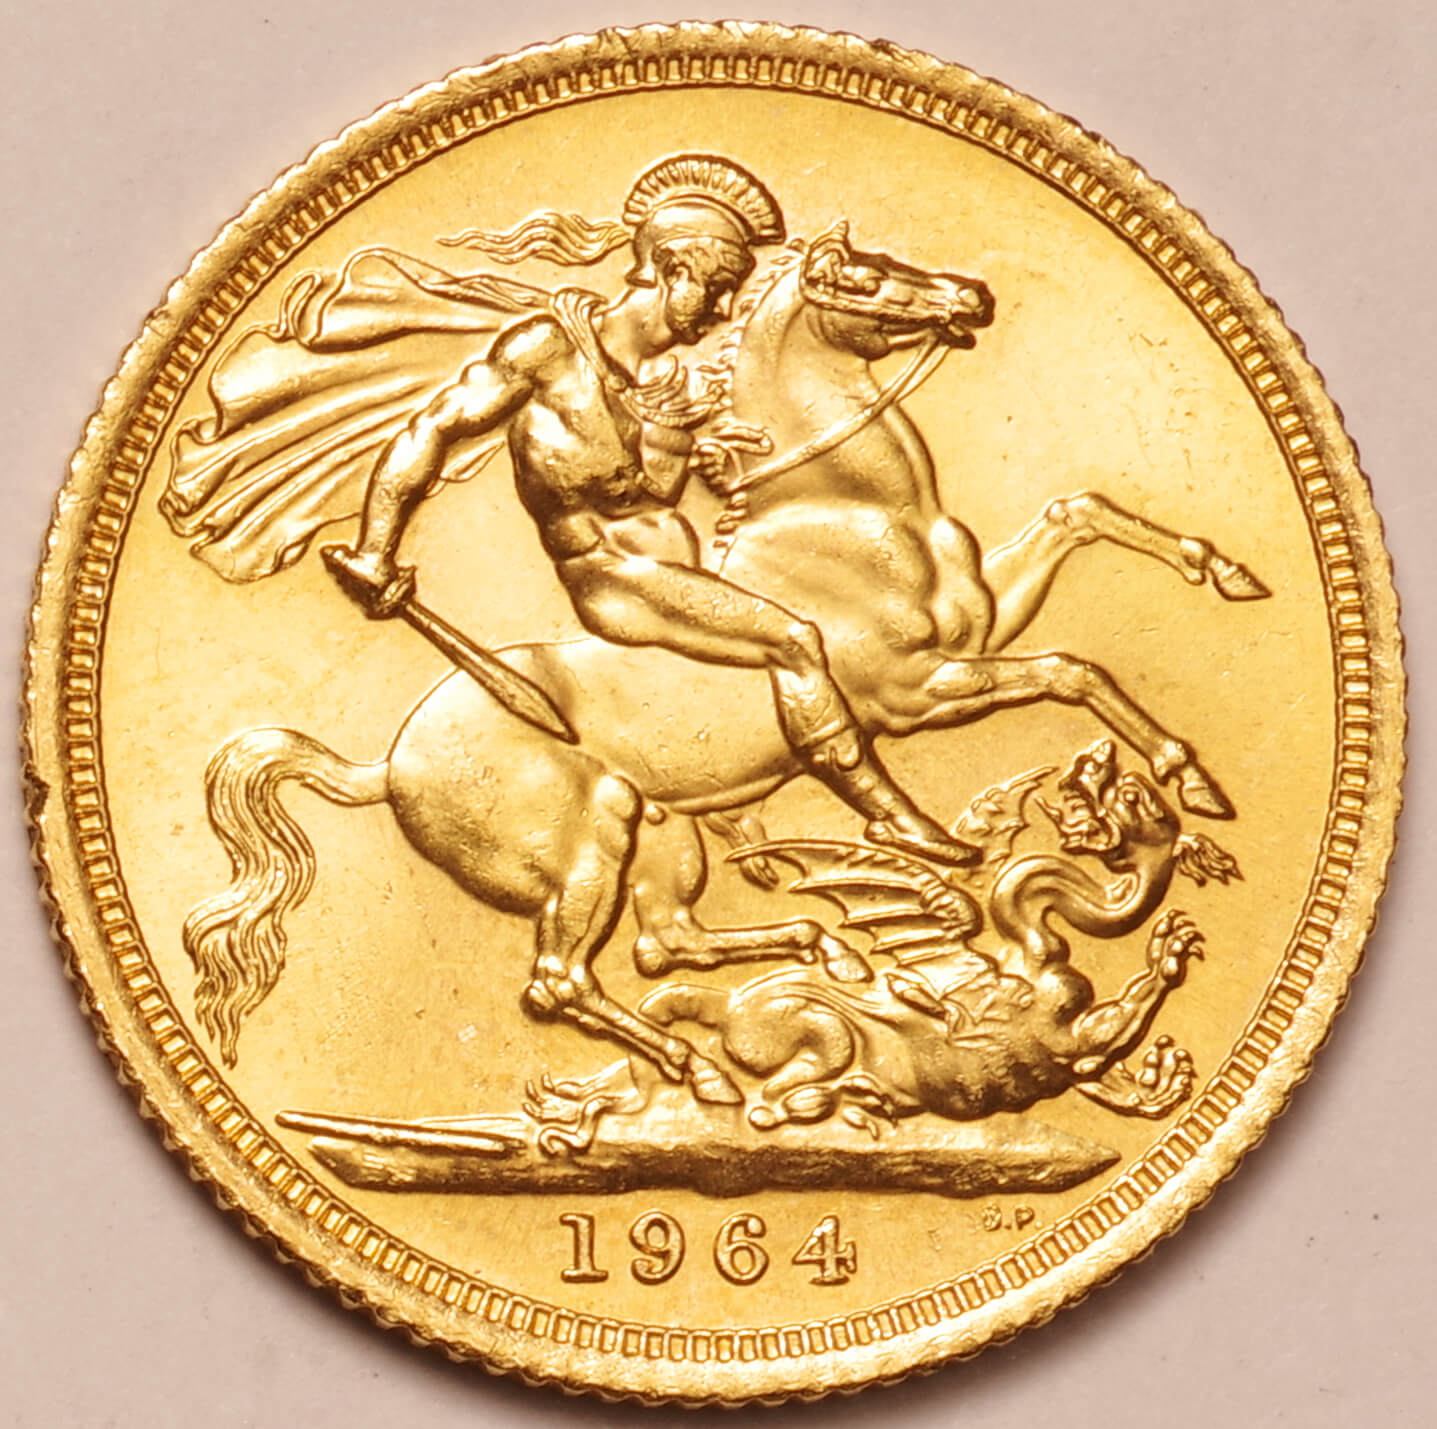 英国-GB ｴﾘｻﾞﾍﾞｽ2世女王像 ﾔﾝｸﾞﾍｯﾄﾞ 1ｿﾌﾞﾘﾝ金貨 1964年 KM908 